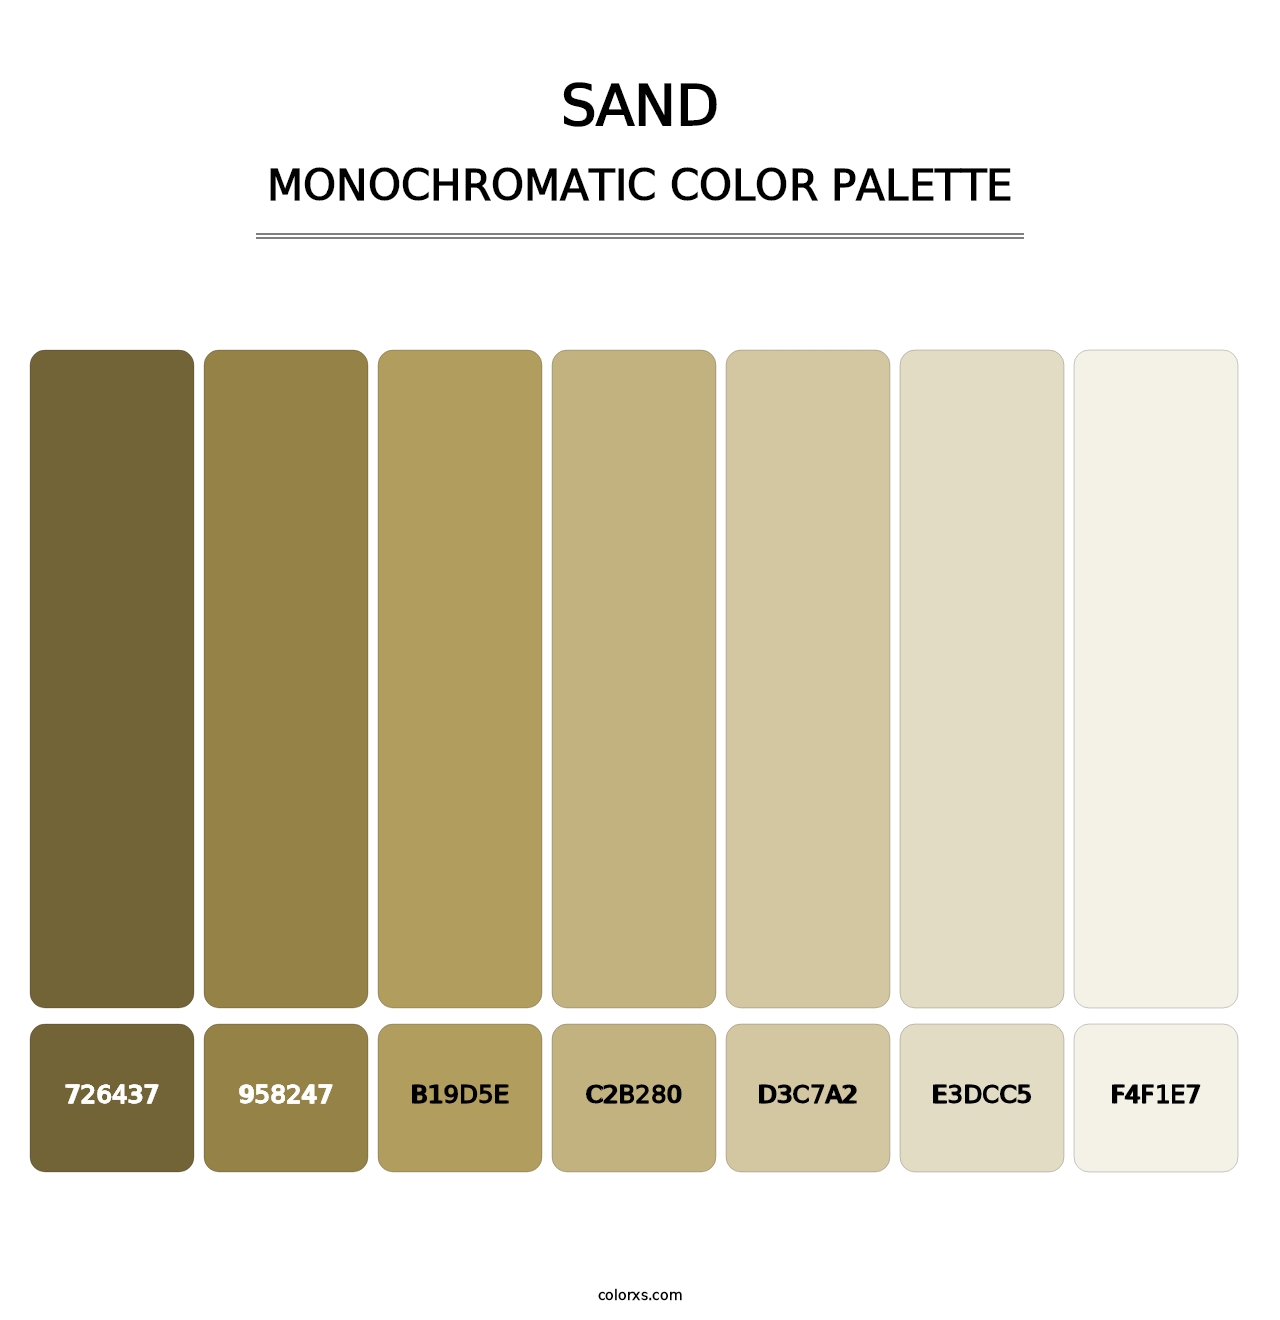 Sand - Monochromatic Color Palette